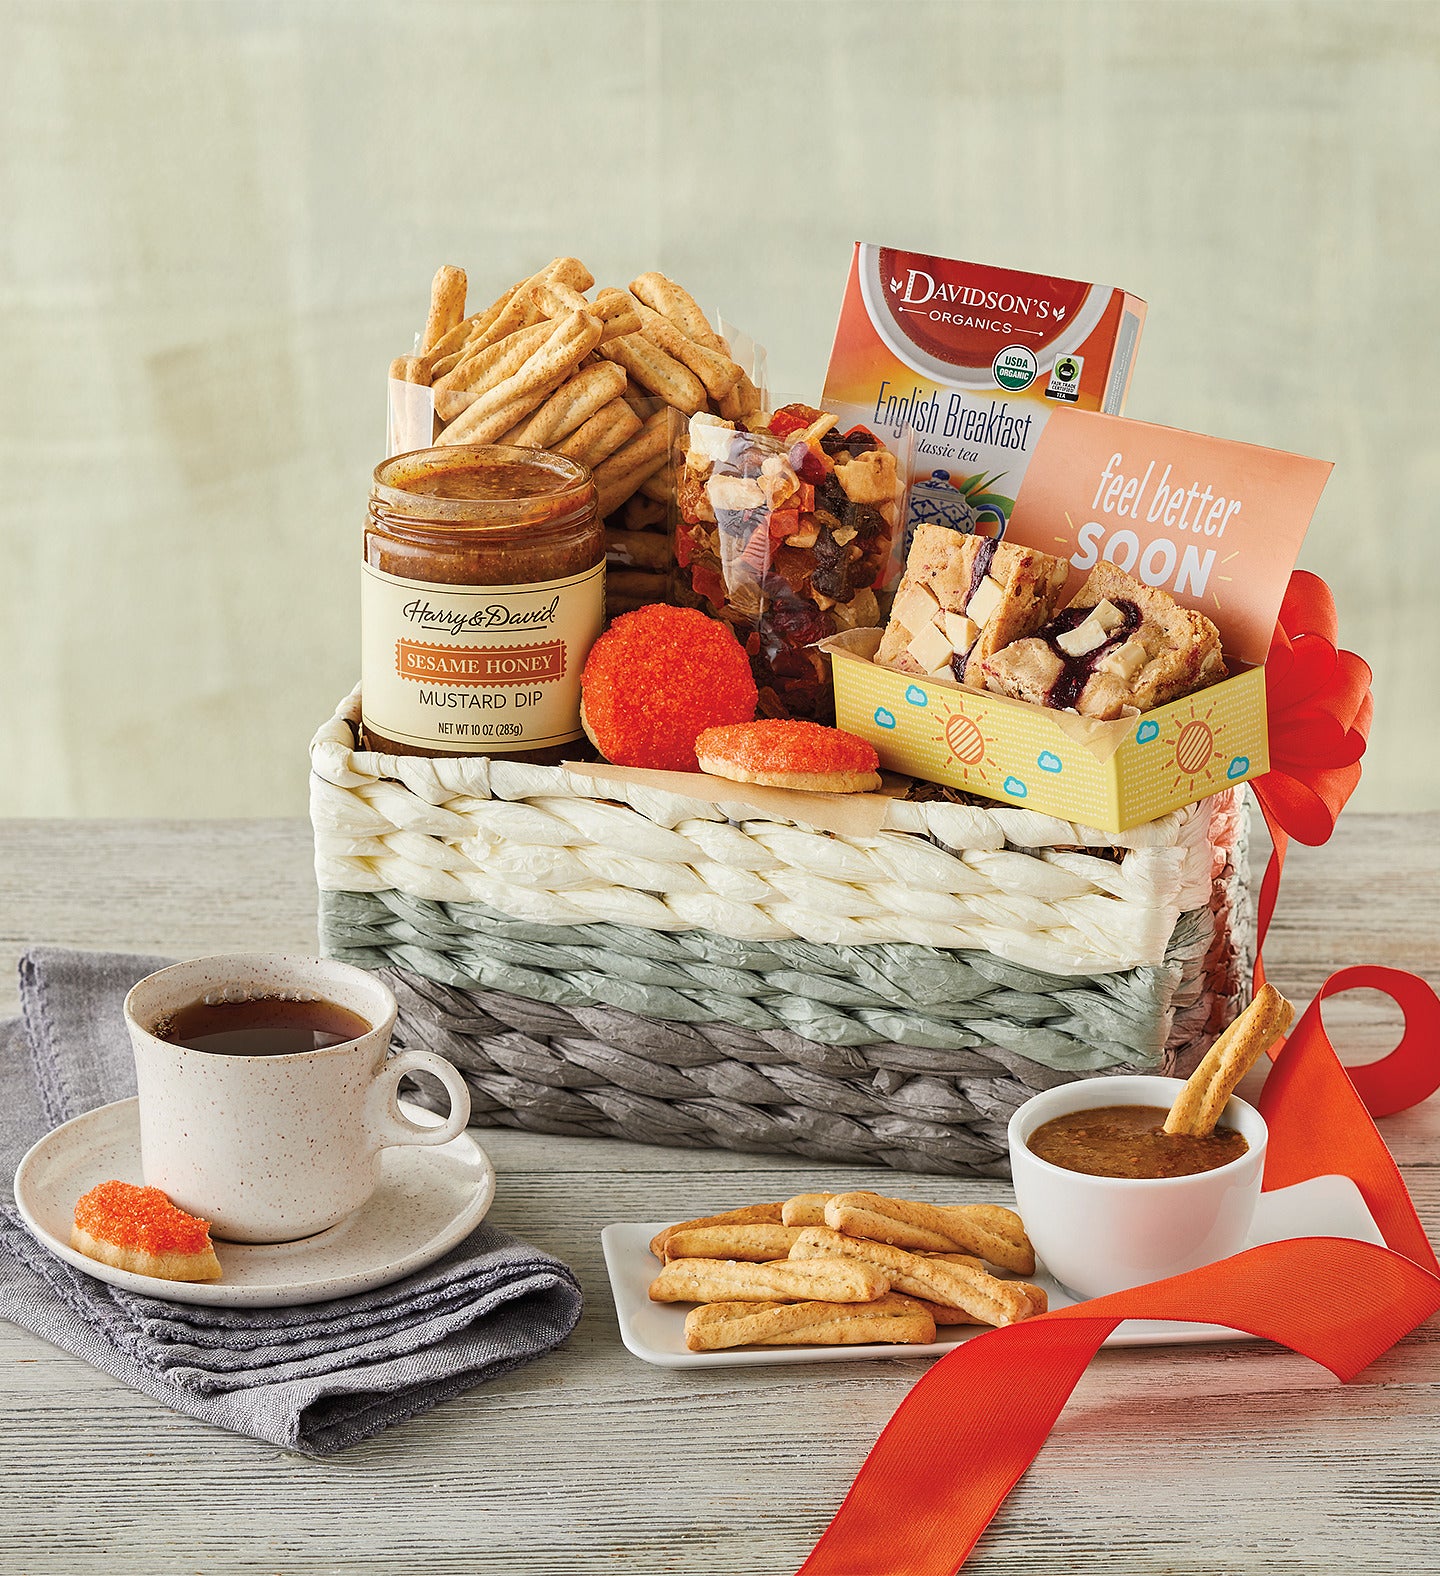 Breakfast Gift Basket